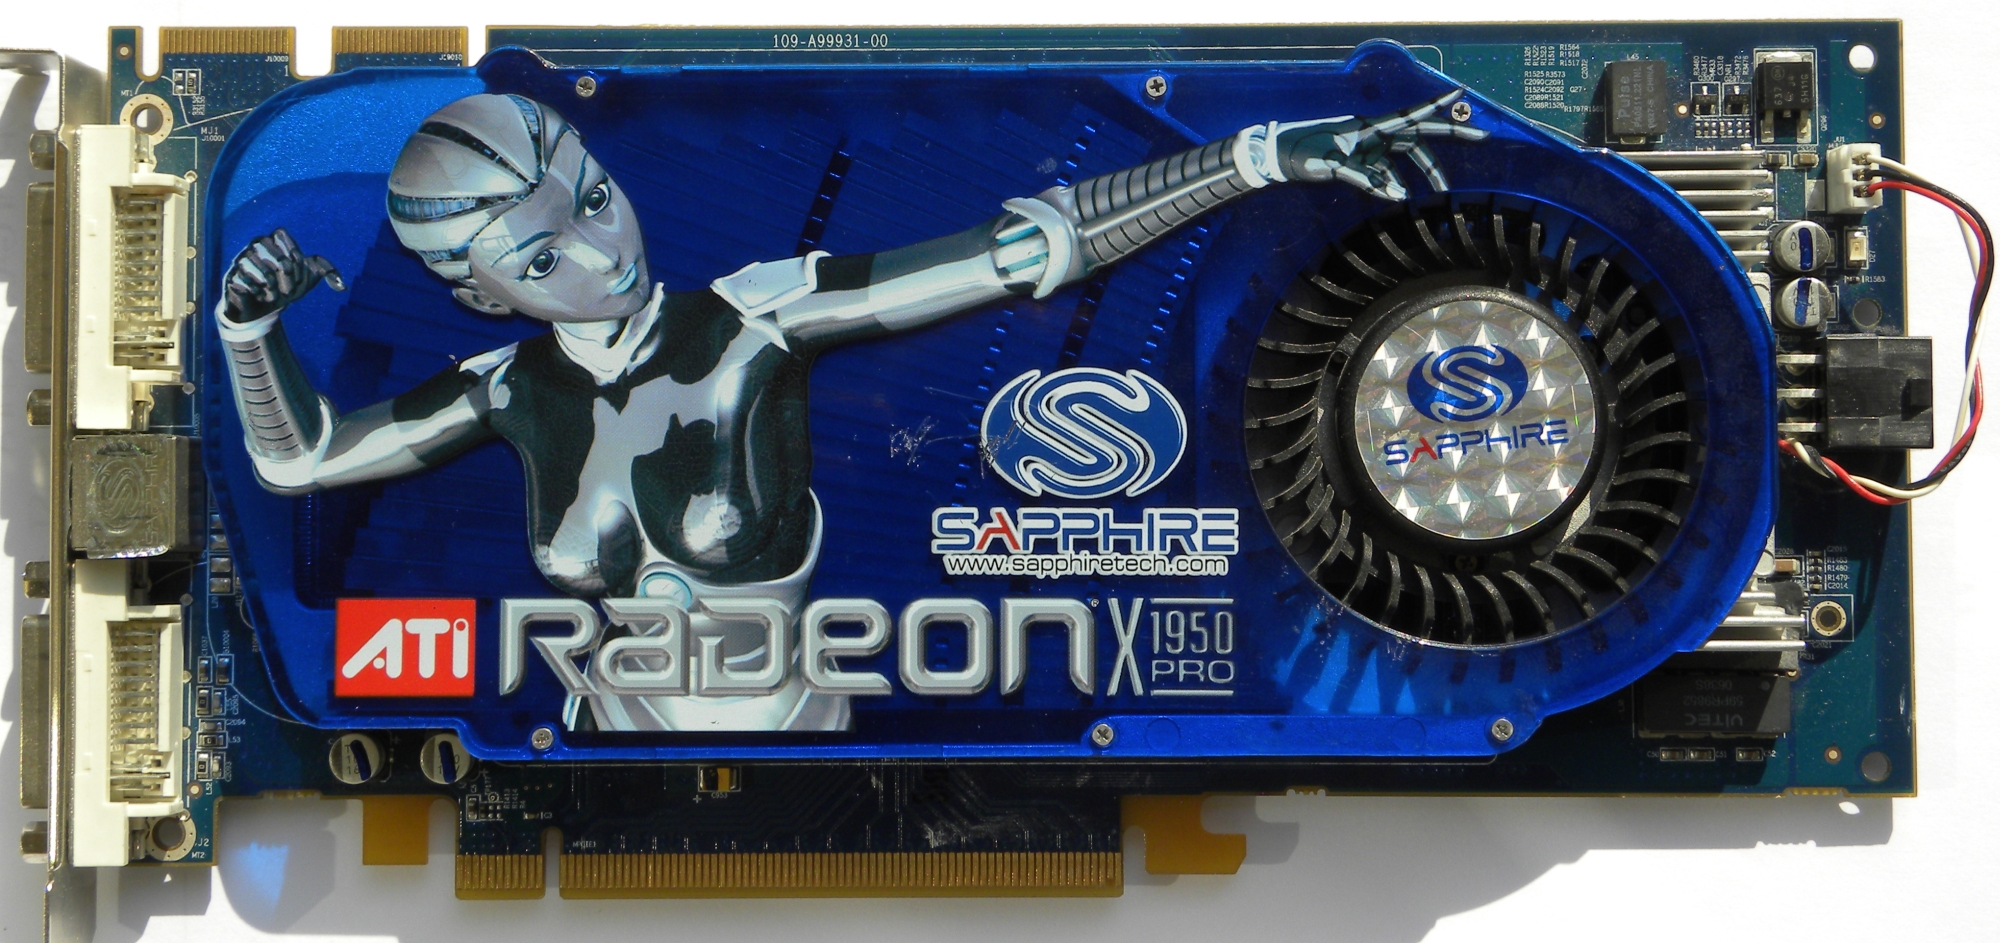  Radeon X1950 Pro. Lúc ra mắt nó có giá cả chục triệu Đồng, bằng tiền mua hầu hết tất cả những phần cứng PC kể trên cộng lại. 